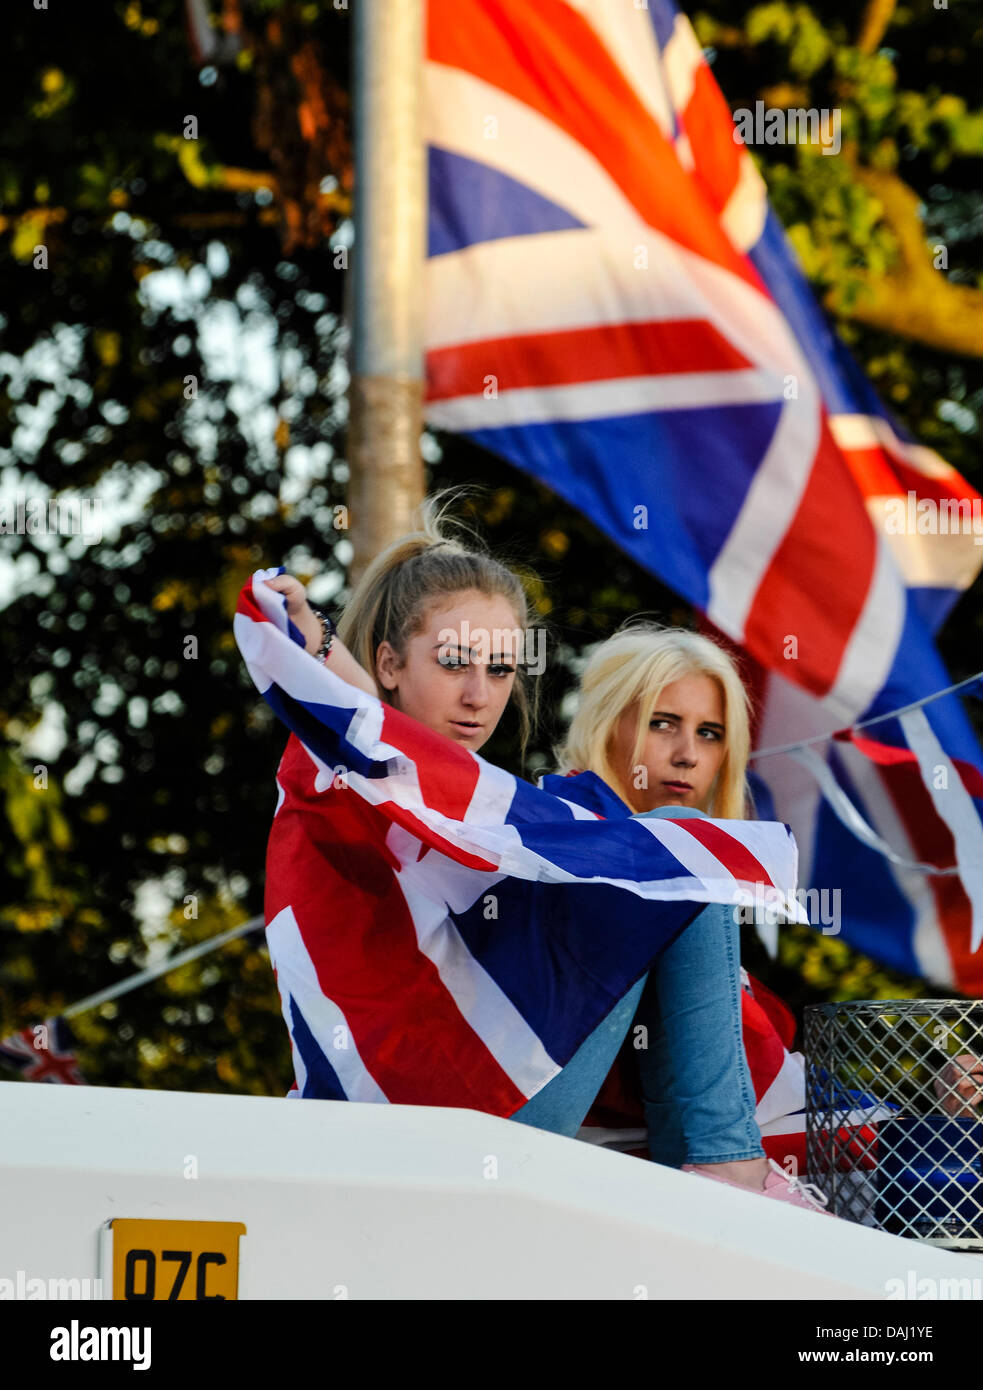 Belfast, Irlanda del Nord, 14 Luglio 2013 - Due ragazze adolescenti, uno drappeggiati in una bandiera europea, sedersi sulla parte superiore di un PSNI blindato credito Landrover: Stephen Barnes/Alamy Live News Foto Stock